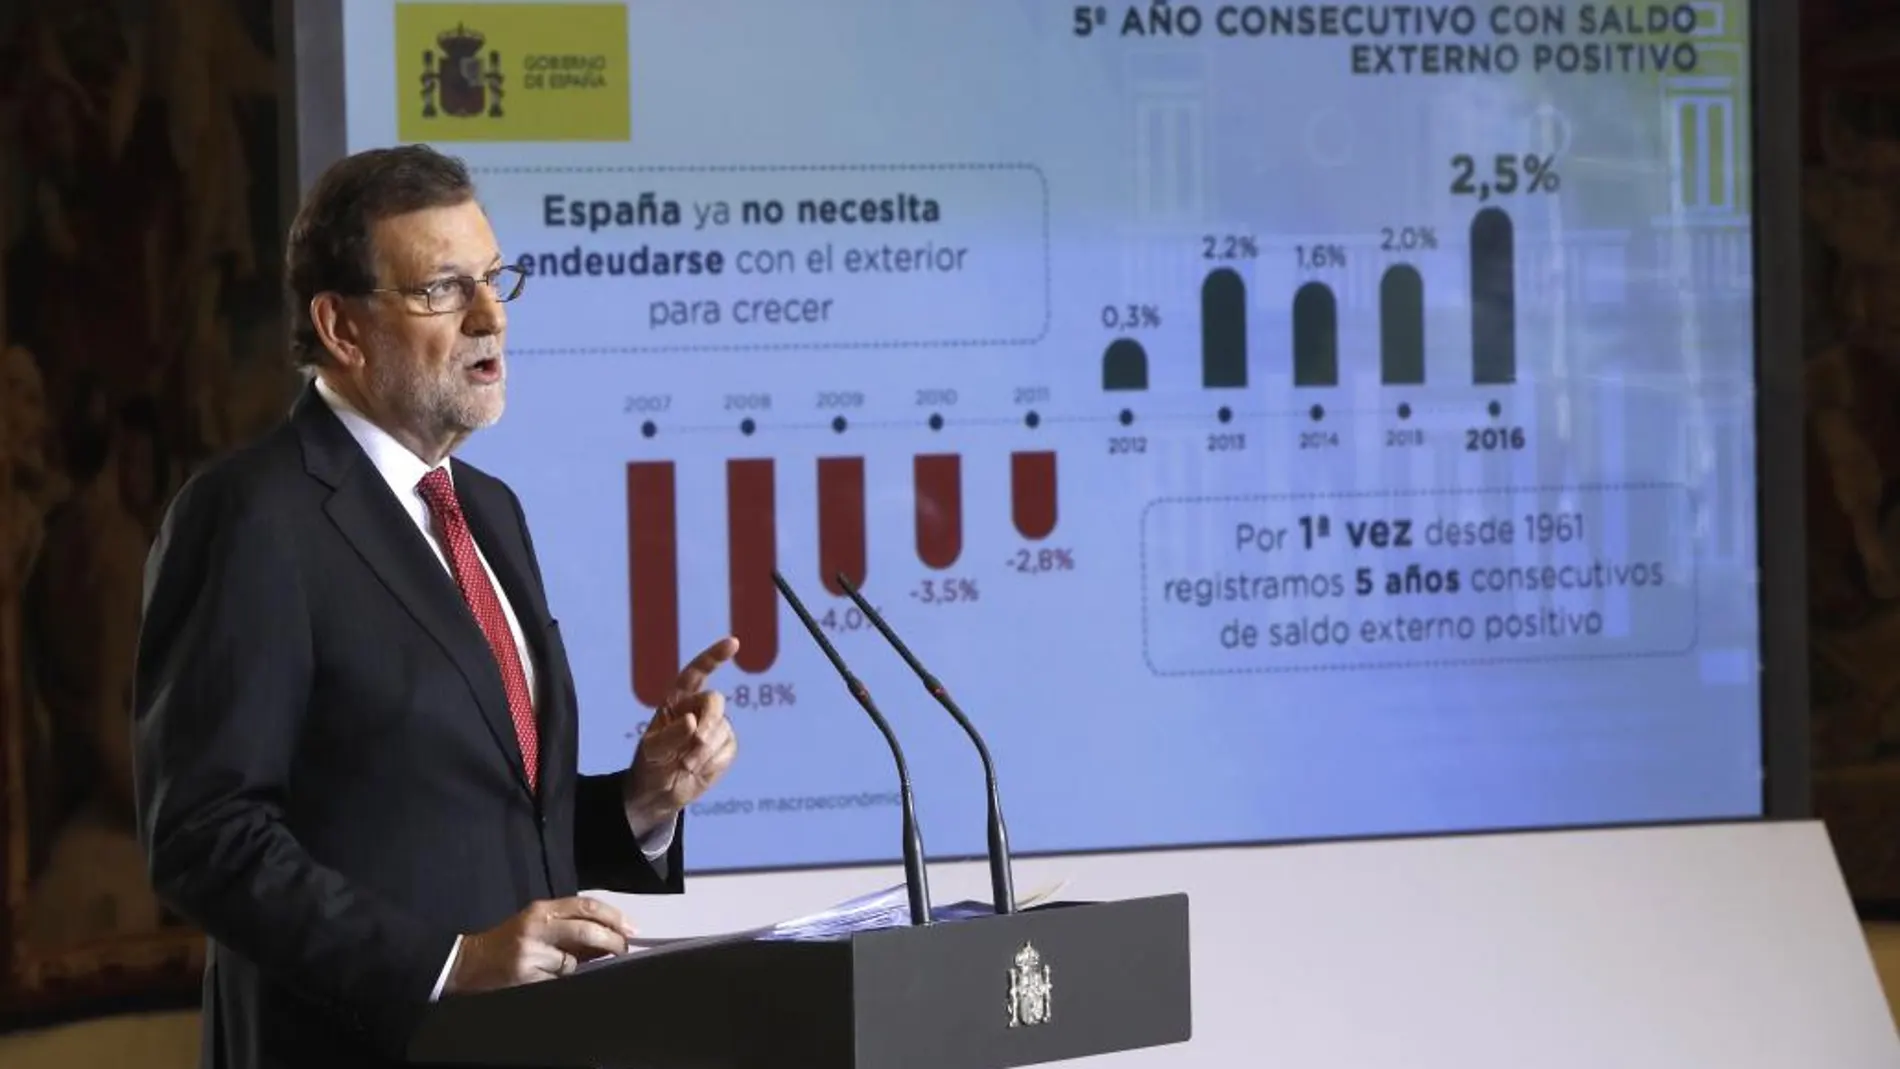 El presidente del Gobierno, Mariano Rajoy, durante la rueda de prensa que ha ofrecido hoy en el Palacio de la Moncloa para hacer balance del año y exponer sus perspectivas para 2017